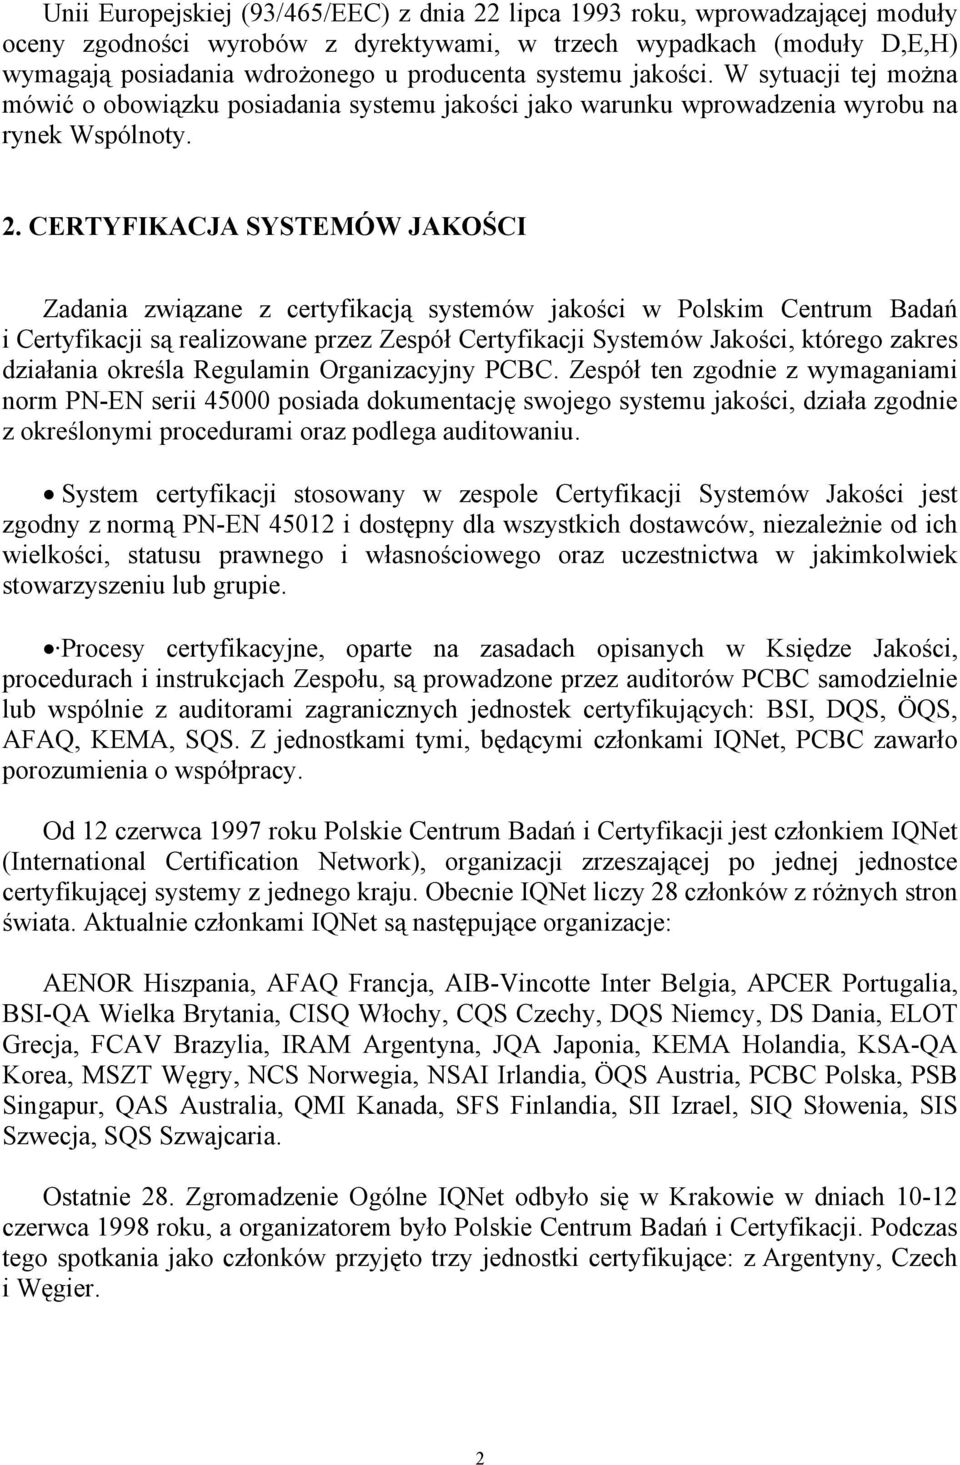 CERTYFIKACJA SYSTEMÓW JAKOŚCI Zadania związane z certyfikacją systemów jakości w Polskim Centrum Badań i Certyfikacji są realizowane przez Zespół Certyfikacji Systemów Jakości, którego zakres